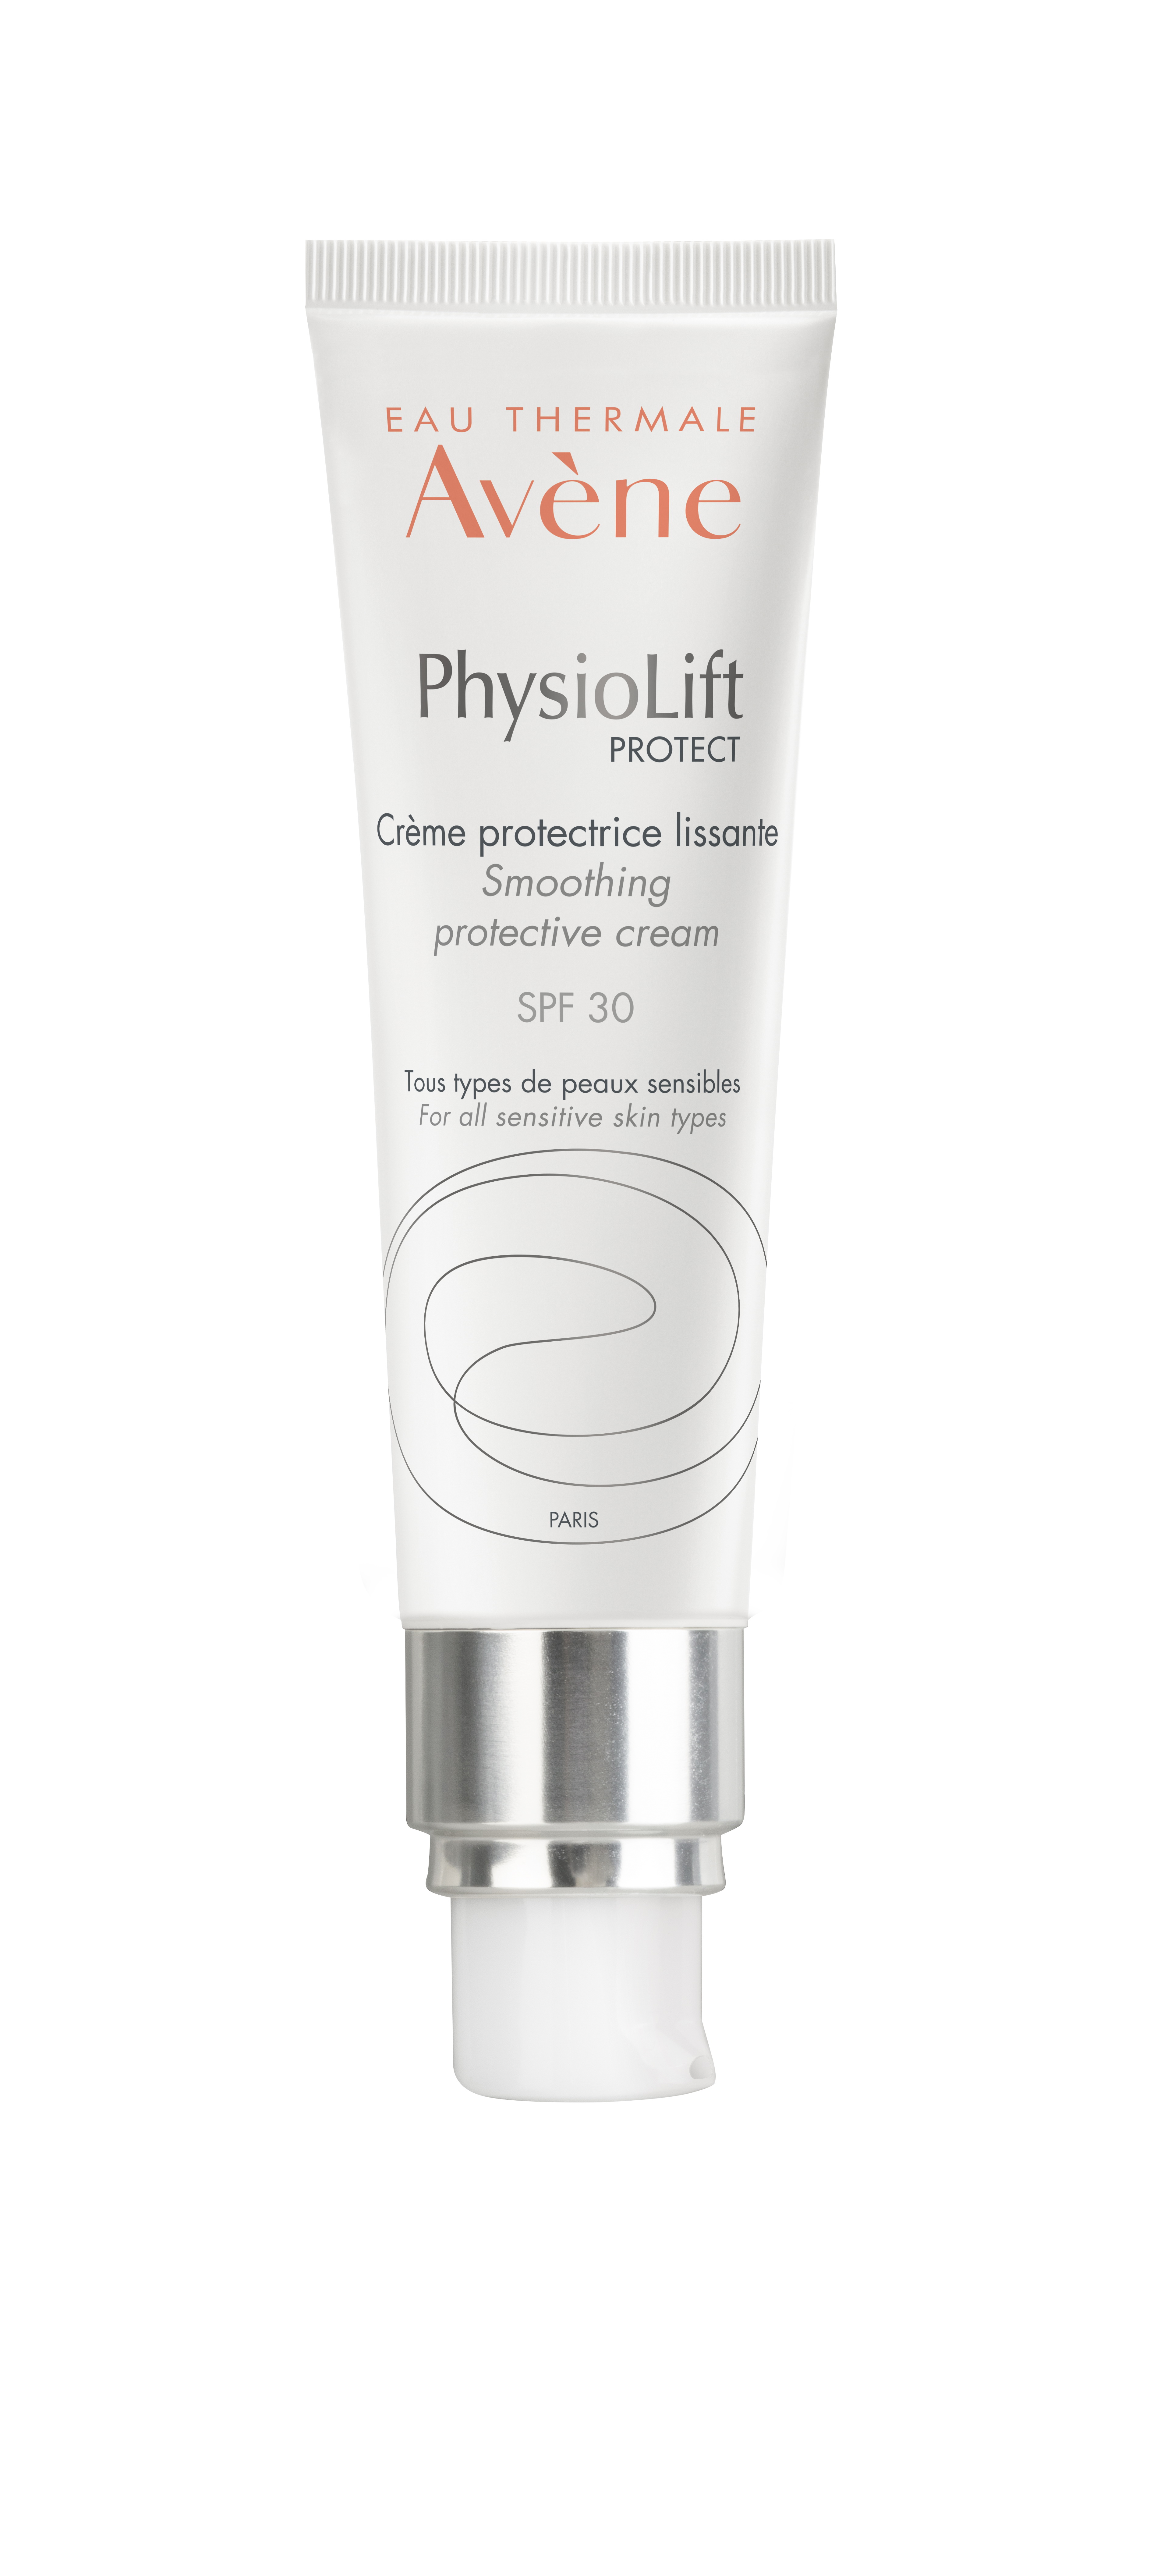 Avene PhysioLift Protect SPF 30 выравнивающий крем для чувствительной кожи всех типов с потерей упругости 30мл